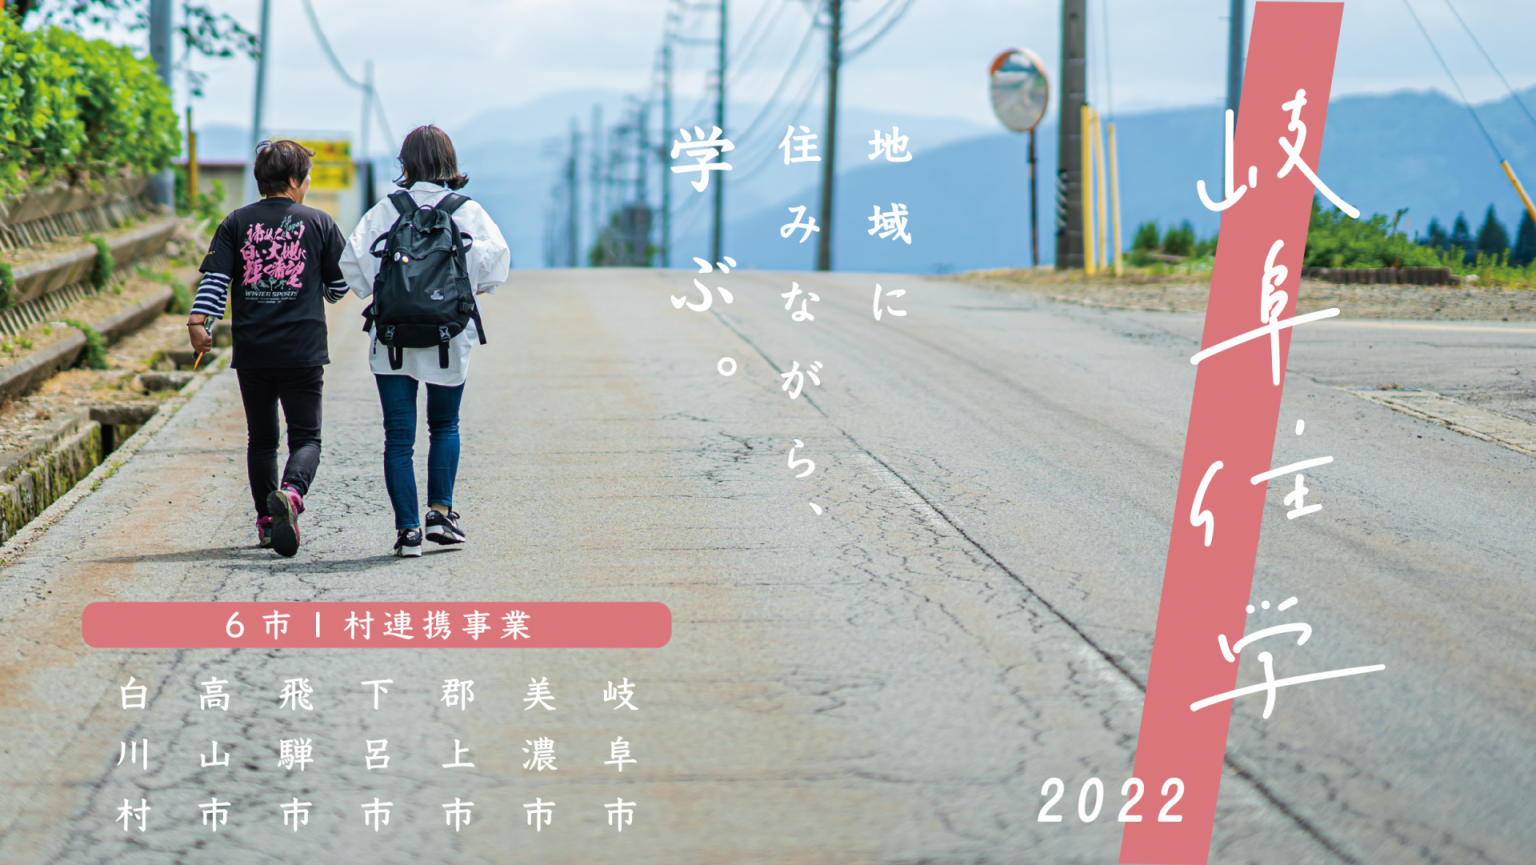 【岐阜住学2022】【参加者まだまだ募集中】岐阜県内に１～２カ月滞在し、地域の方と交流しながら、地域の課題や魅力を情報発信していただける大学生等を募集します！